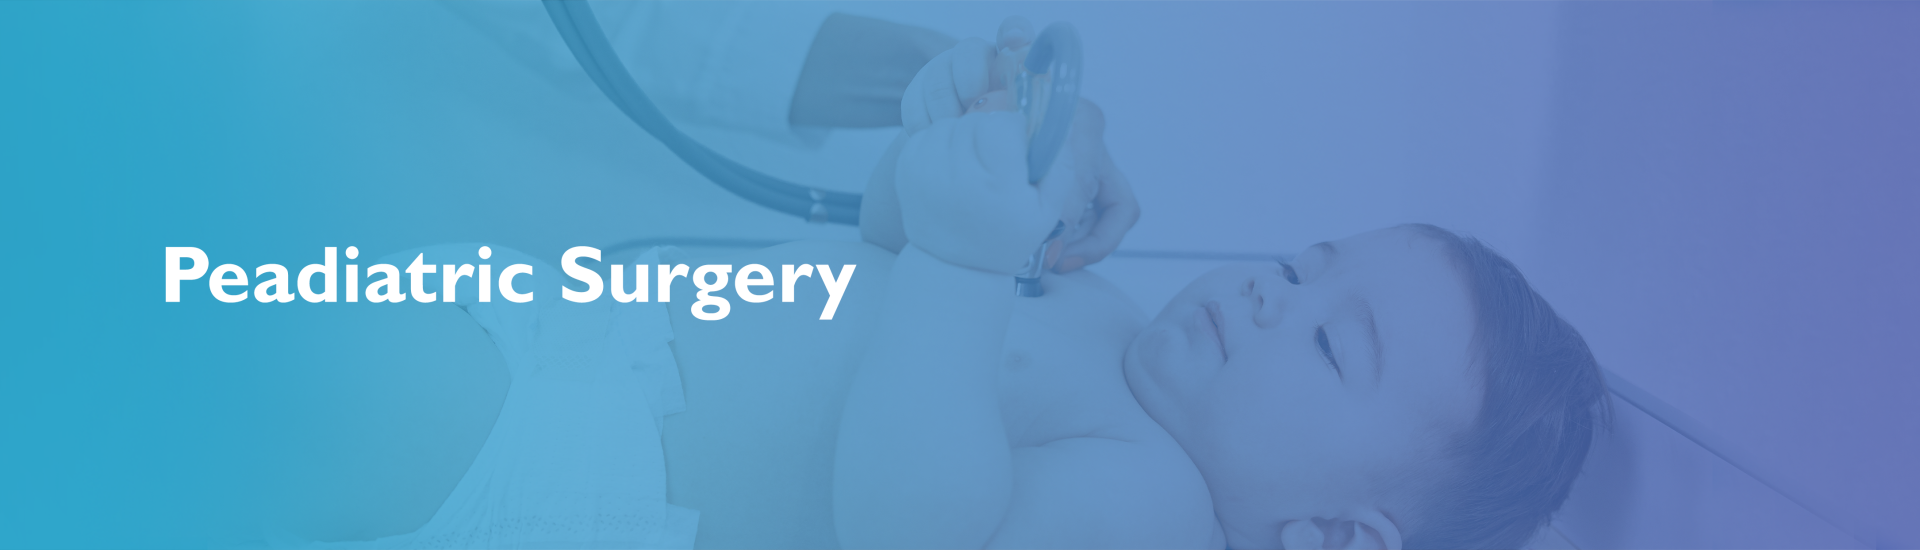 Paediatric Surgery | RMI